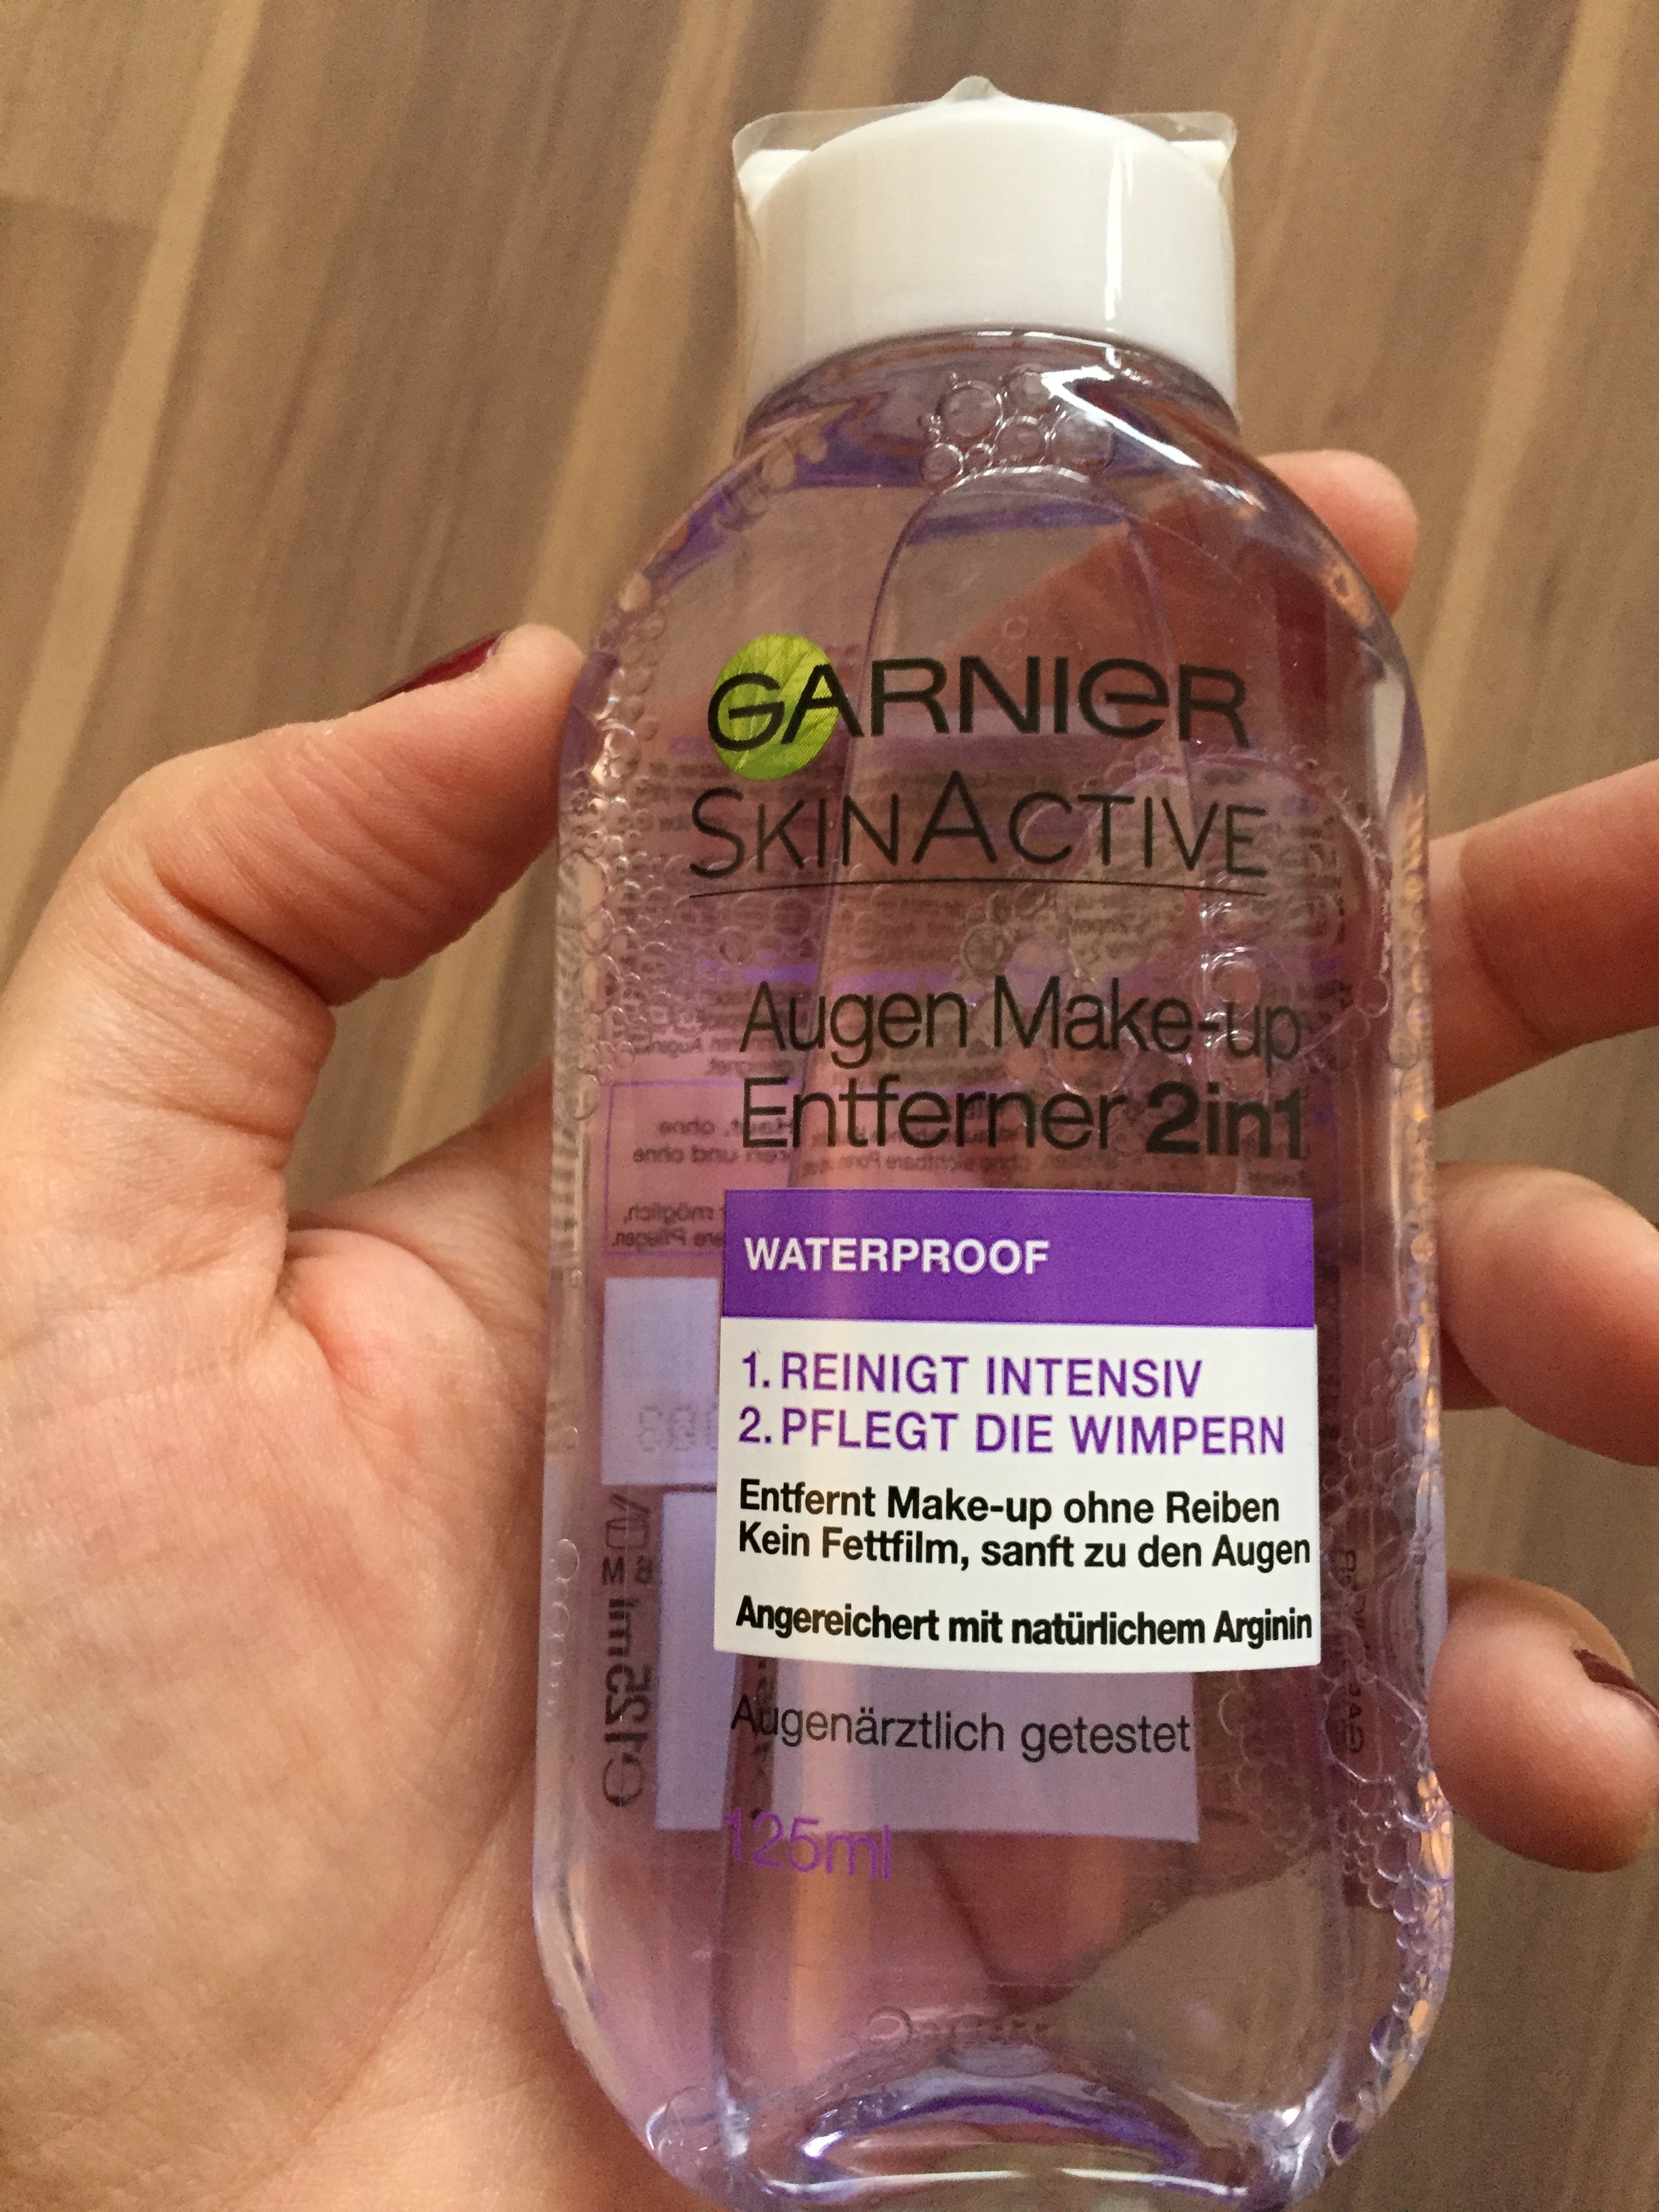 Produkttest: Garnier Skin Active – Entferner2in1 missappledome Make-up Augen